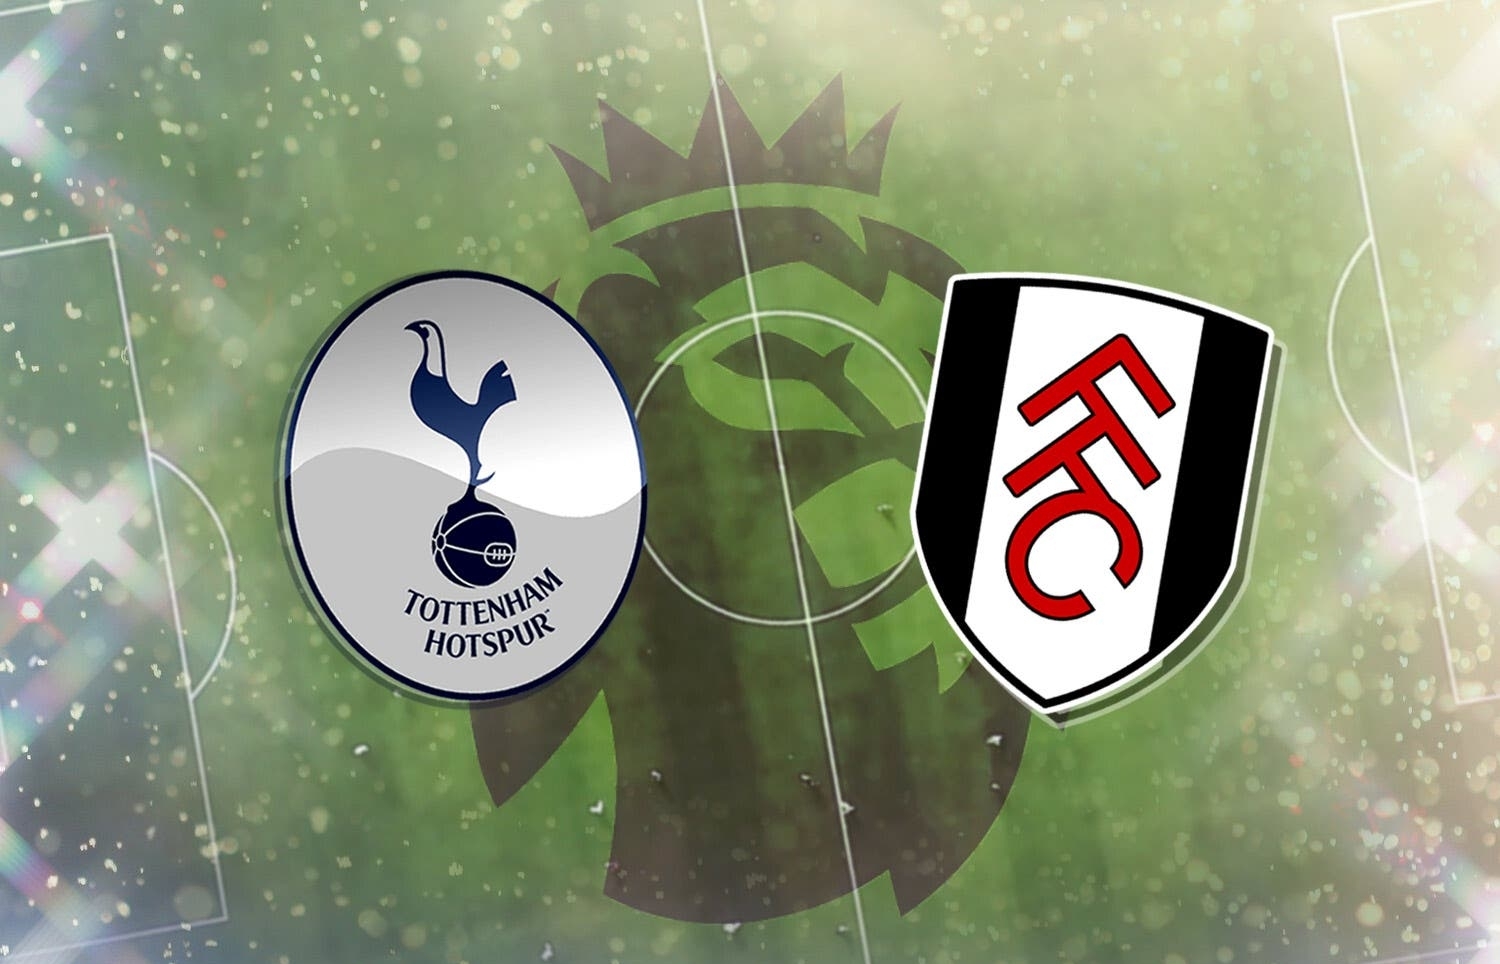 Kênh xem trực tiếp Tottenham vs Fulham, vòng 16 Ngoại hạng Anh 2020-2021